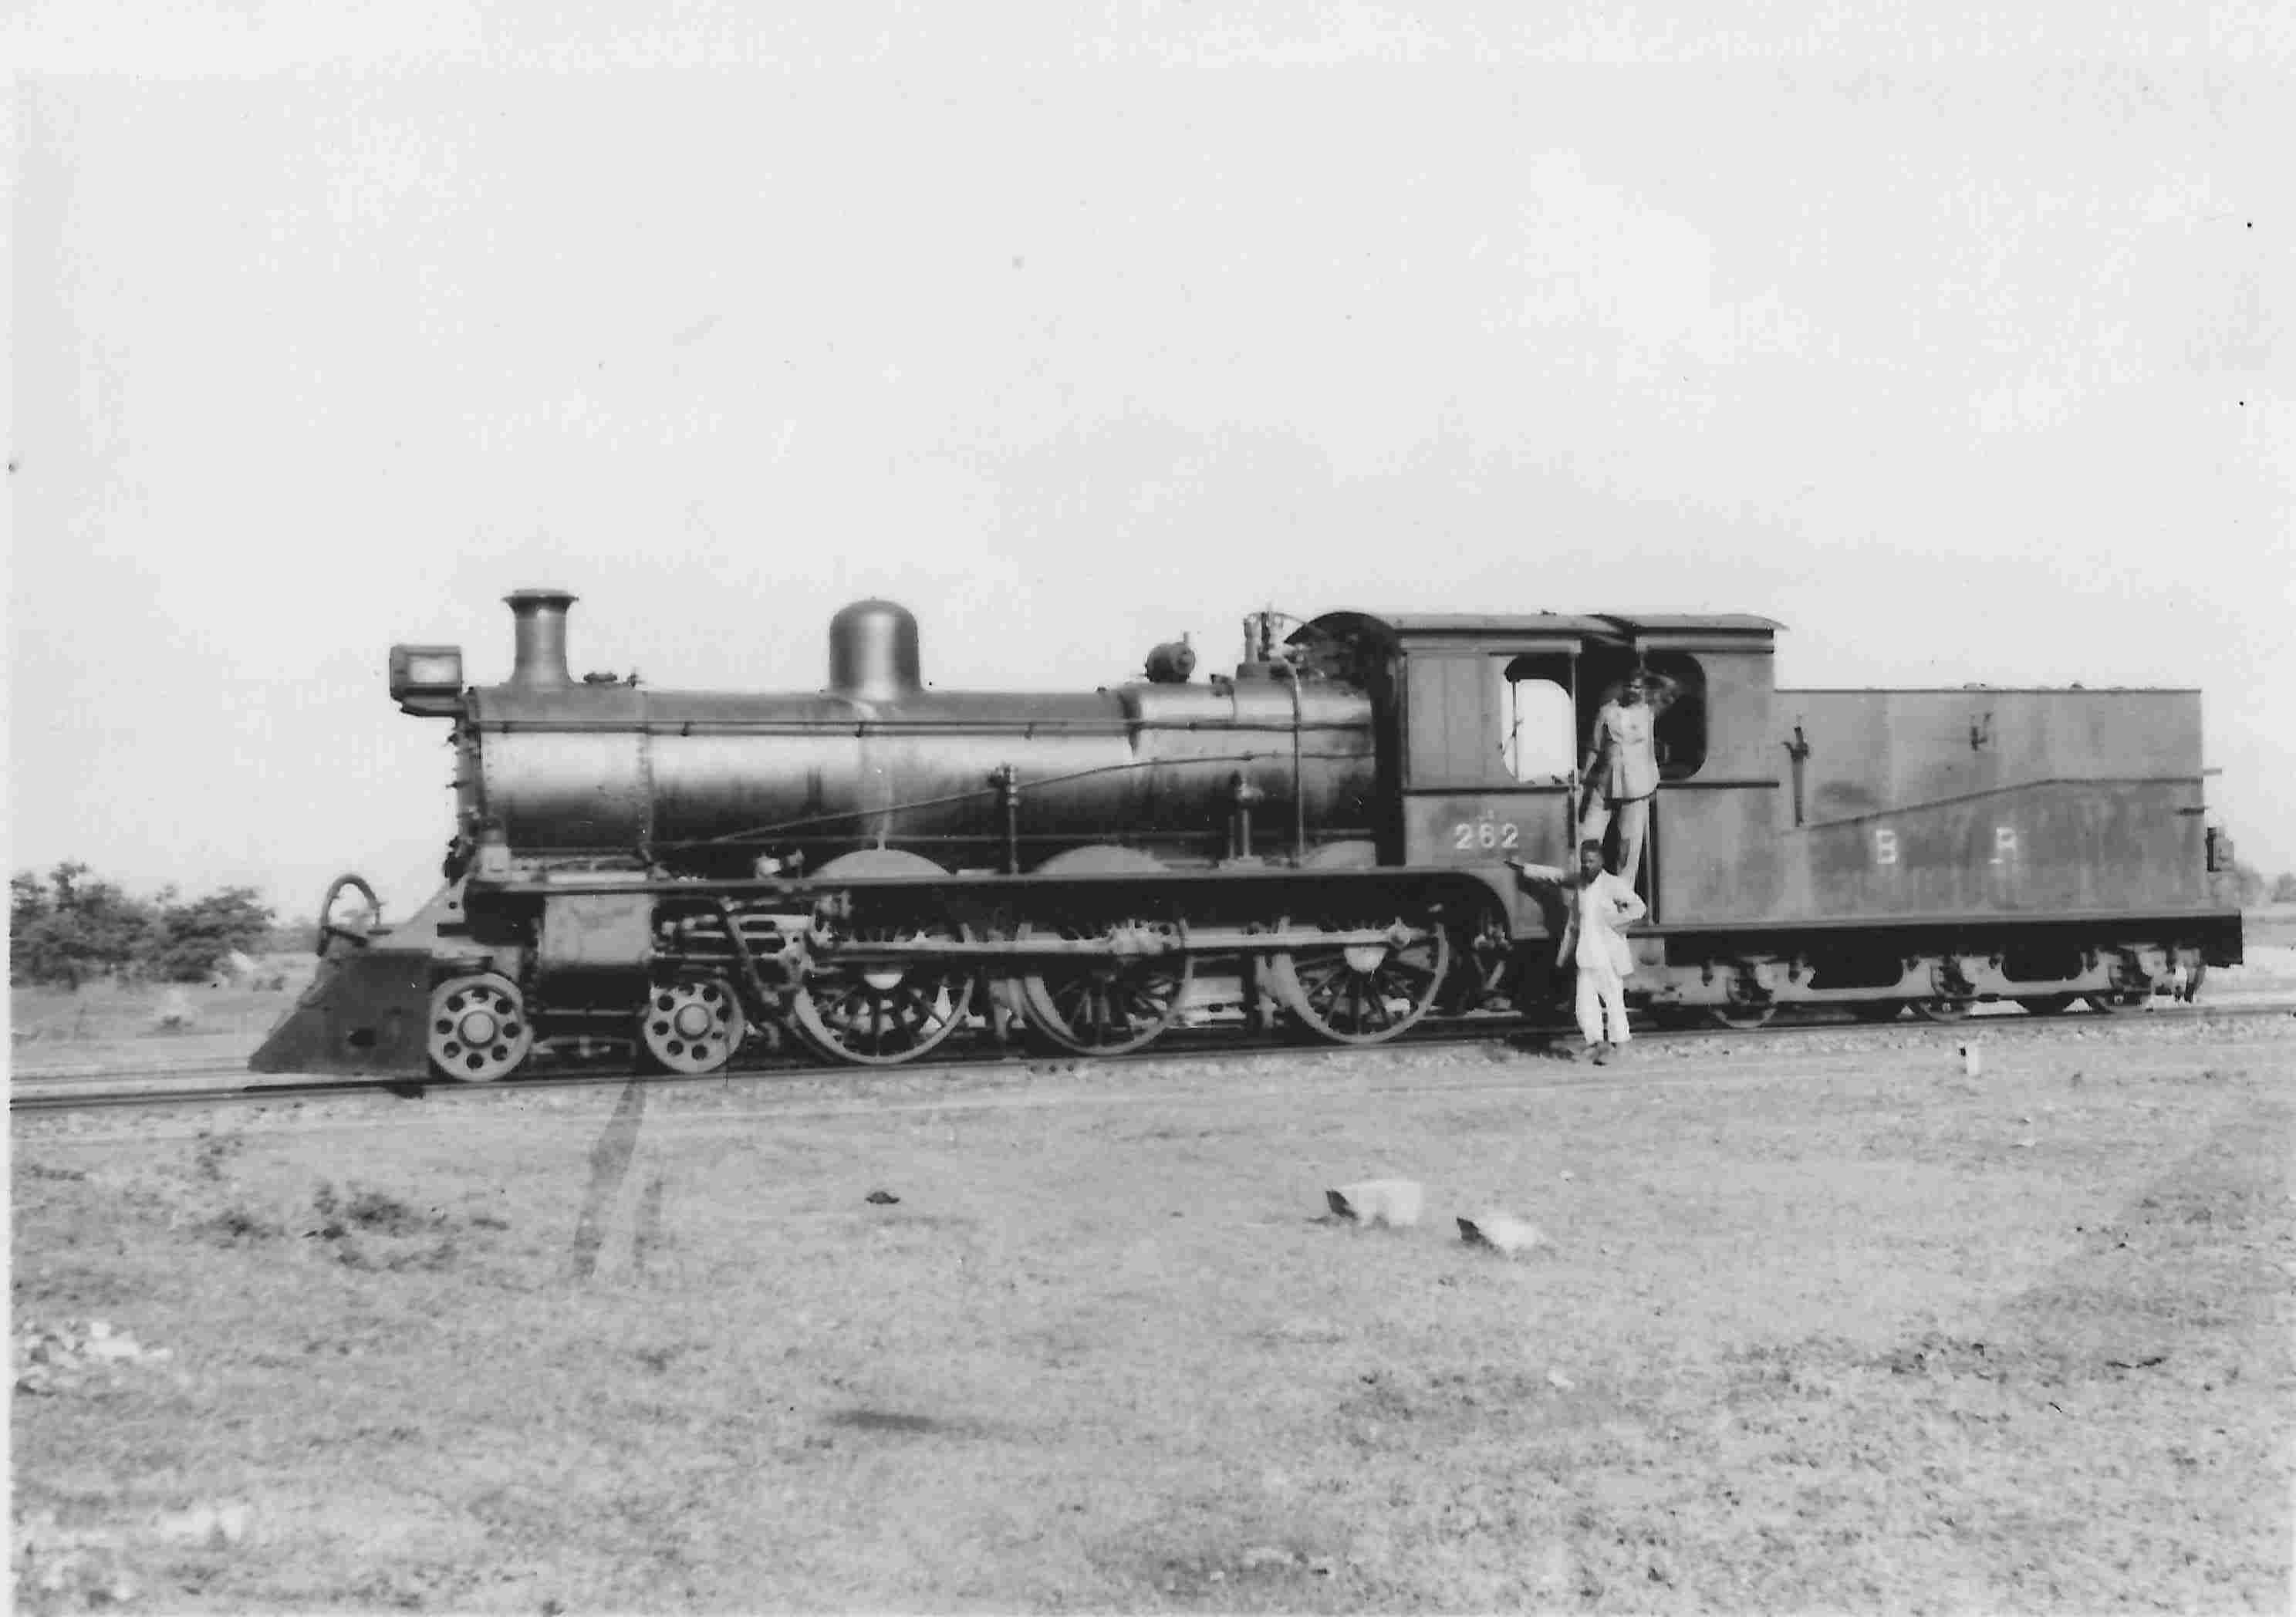 Burma Railways 4-6-0 no. 252